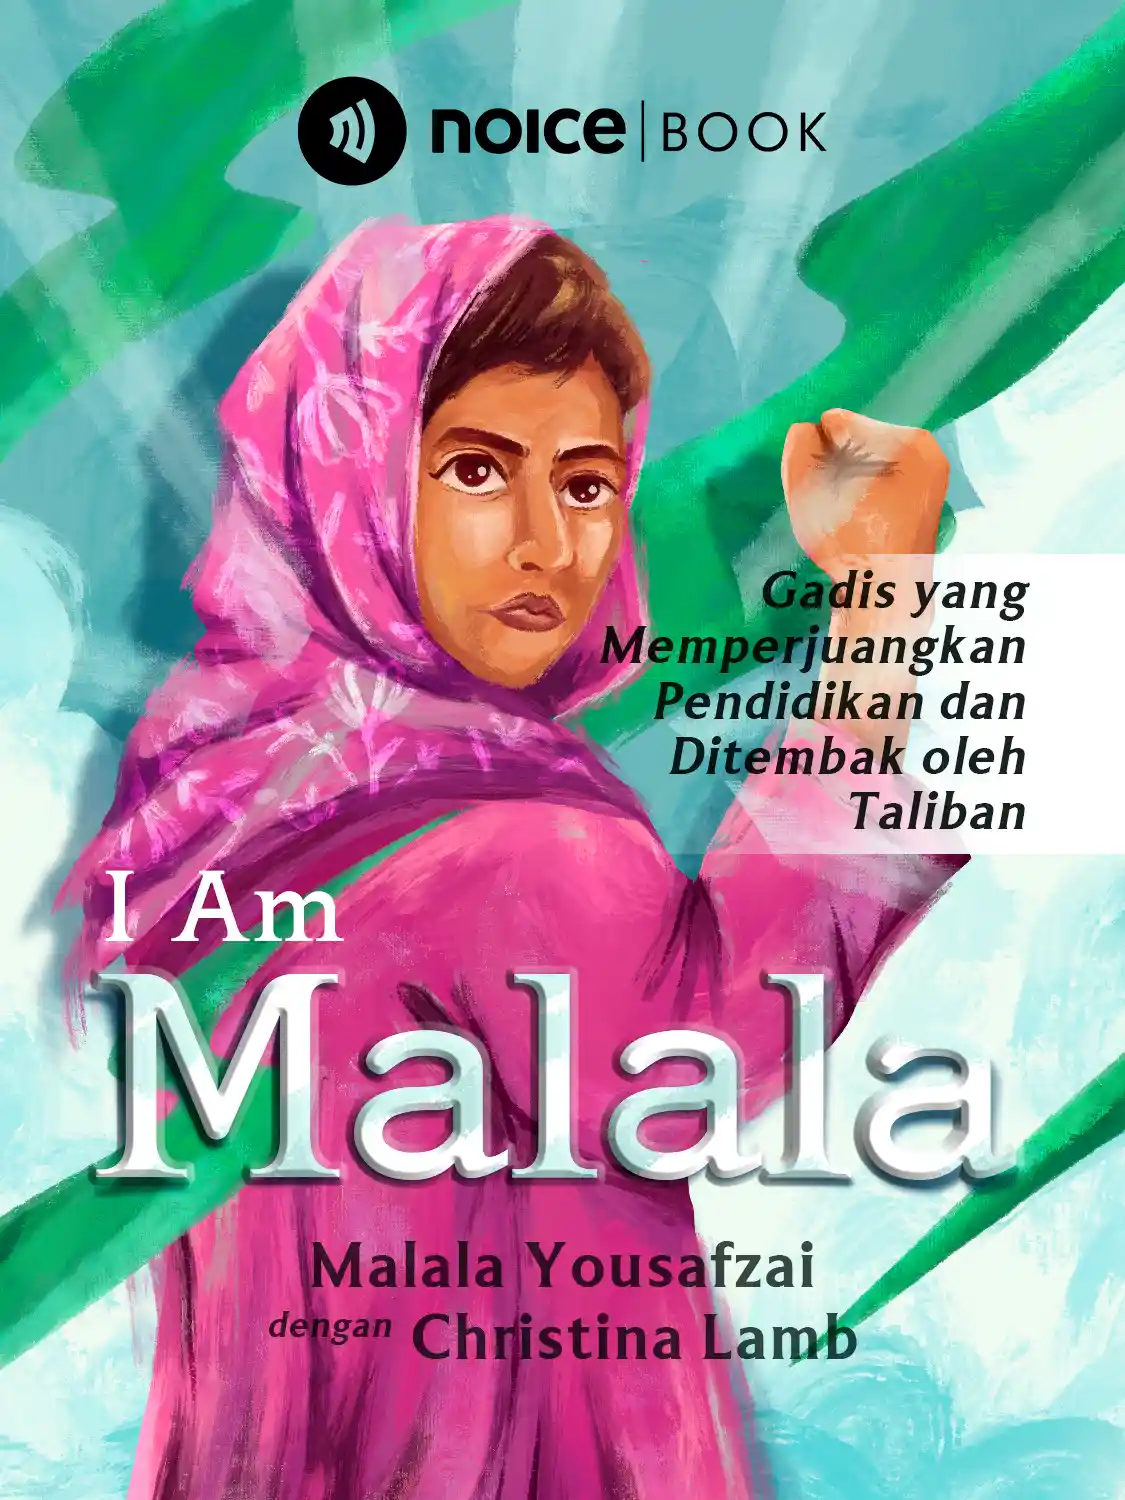 #5 Malala ditembak di kepala saat ingin ke sekolah.